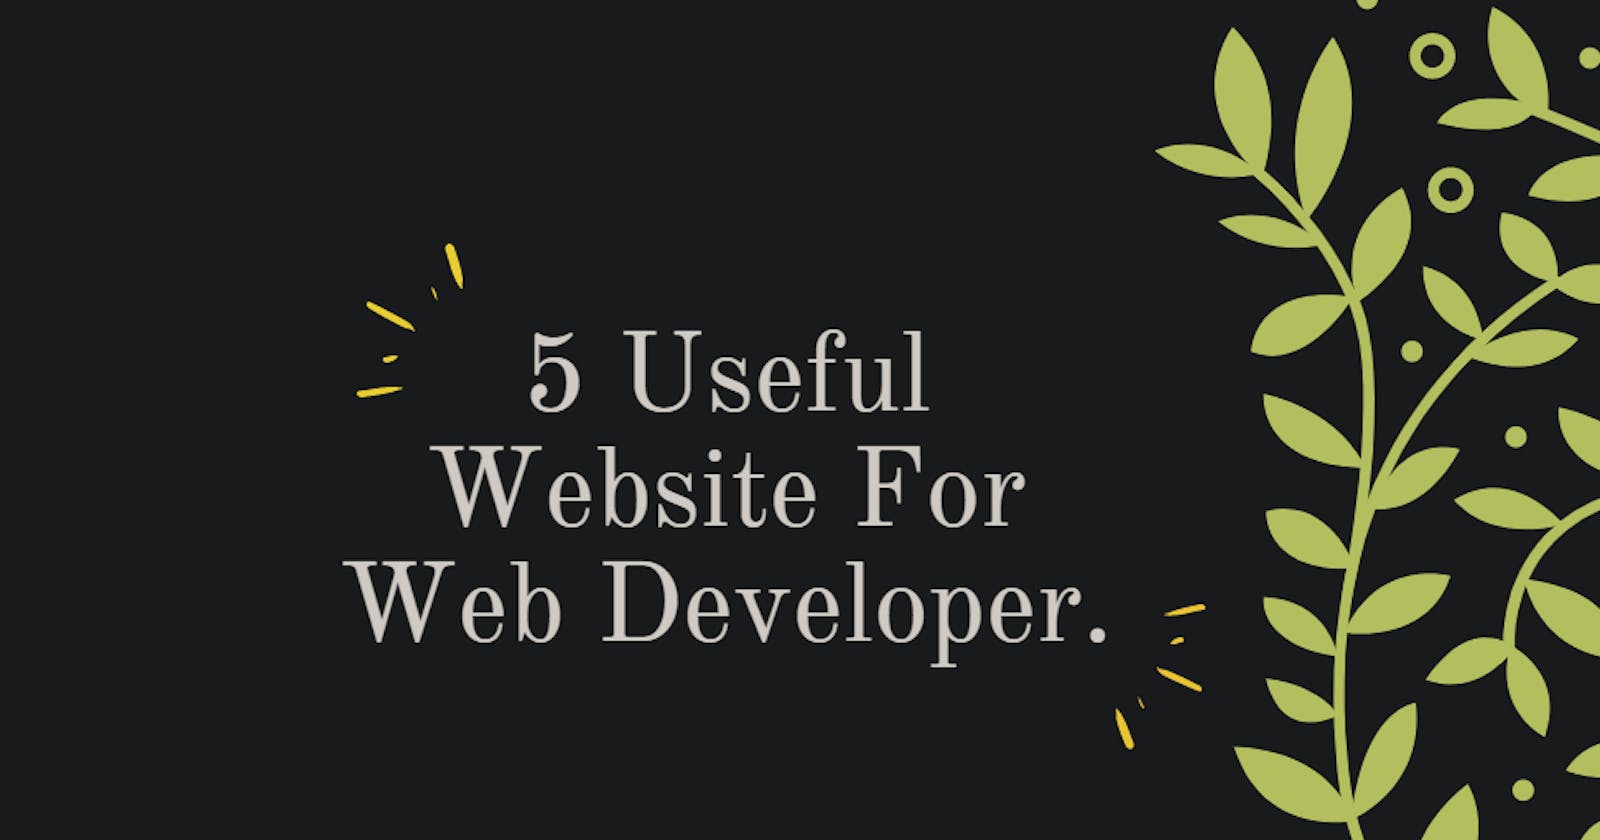 5 Useful Website For Web Developer.